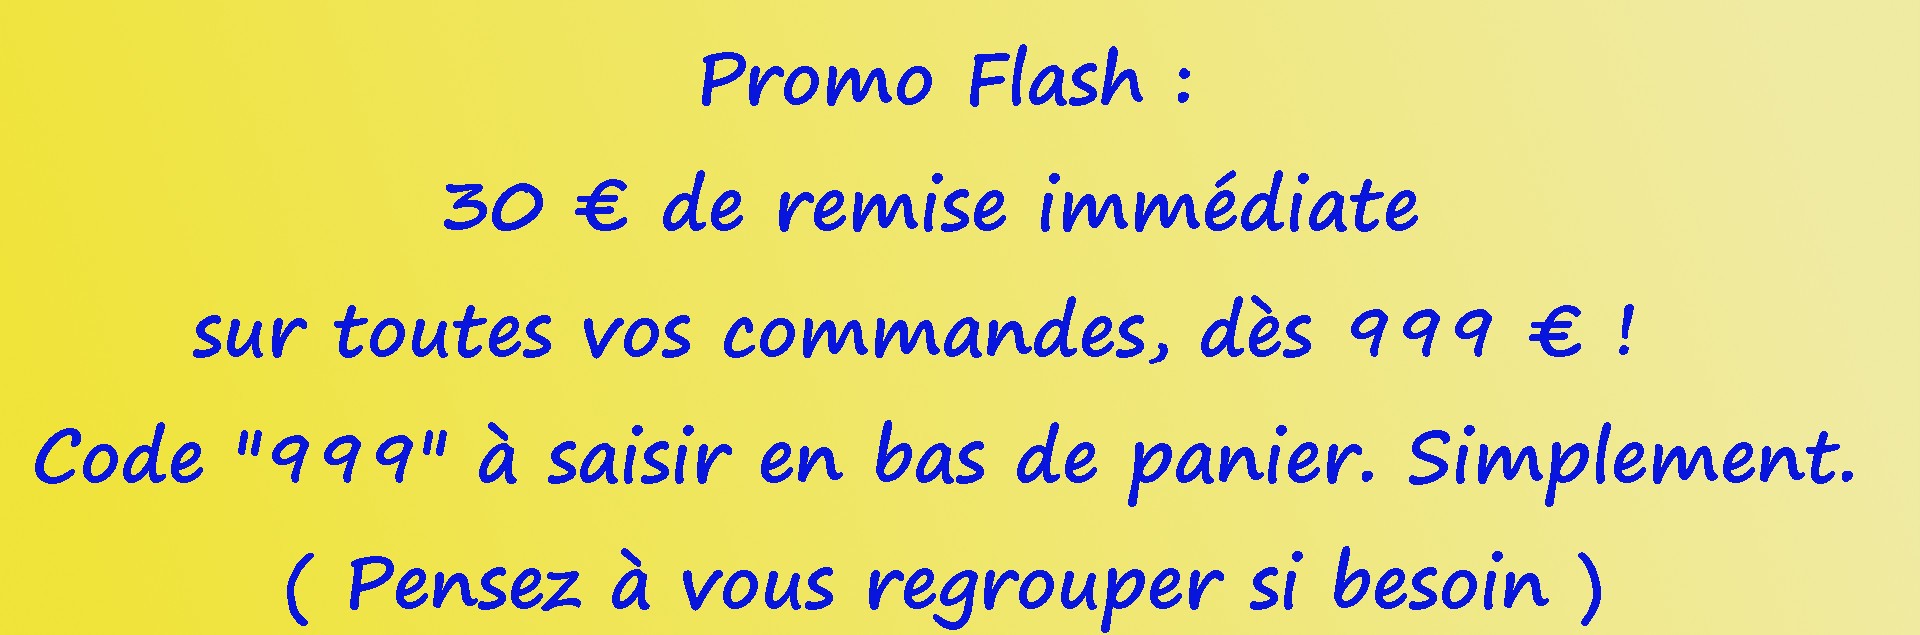 Promo Flash :  30 € de remise immédiate sur toutes vos commandes, dès 999 € !  Code "999"